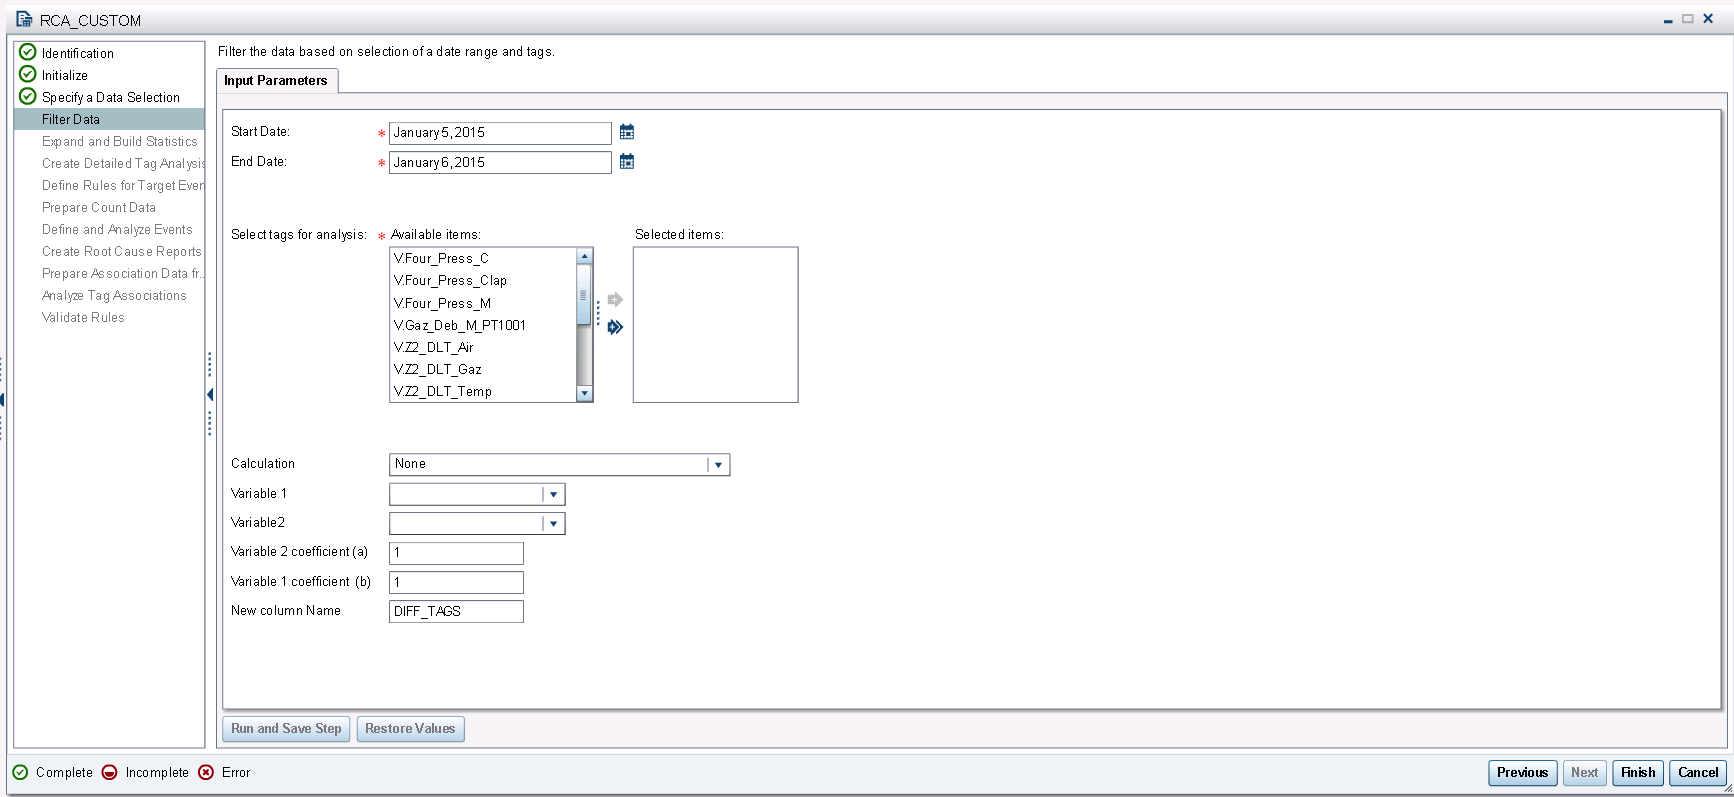 Figure 3: New “Filter Data” interface